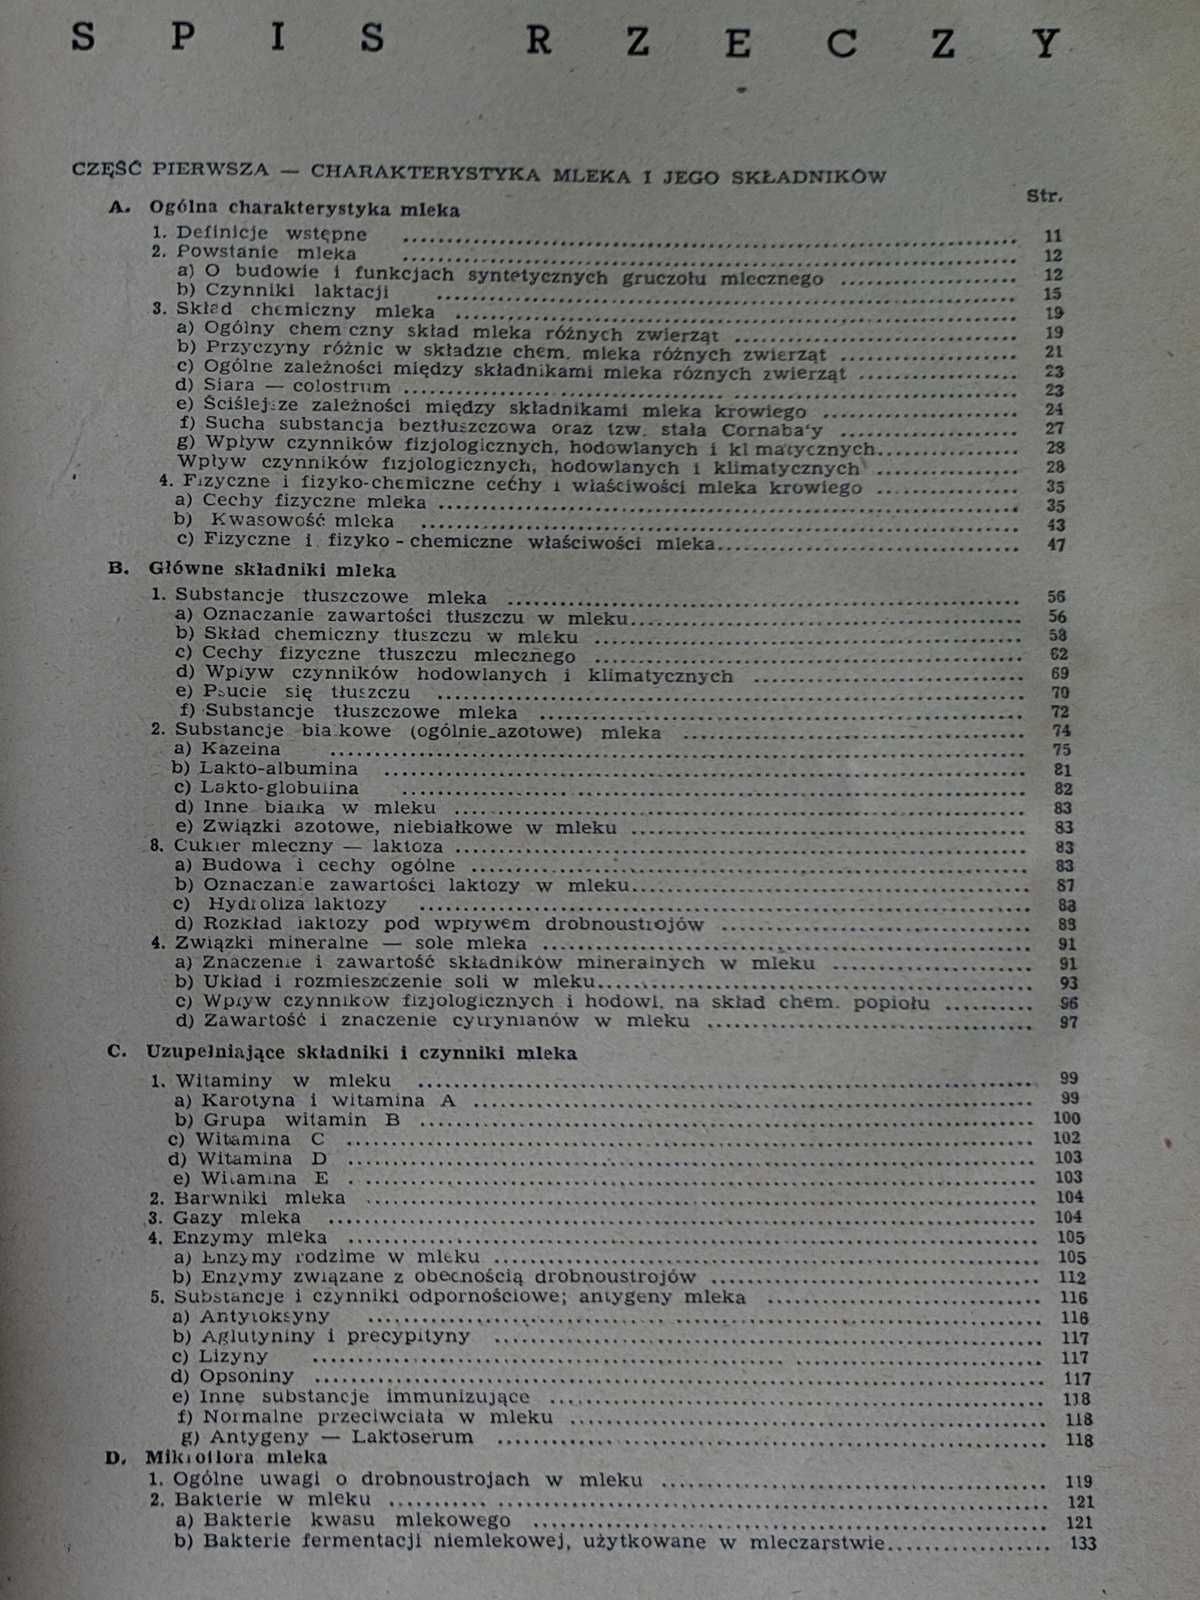 Chemia i higiena mleka E. Pijanowski, książka z 1948 roku